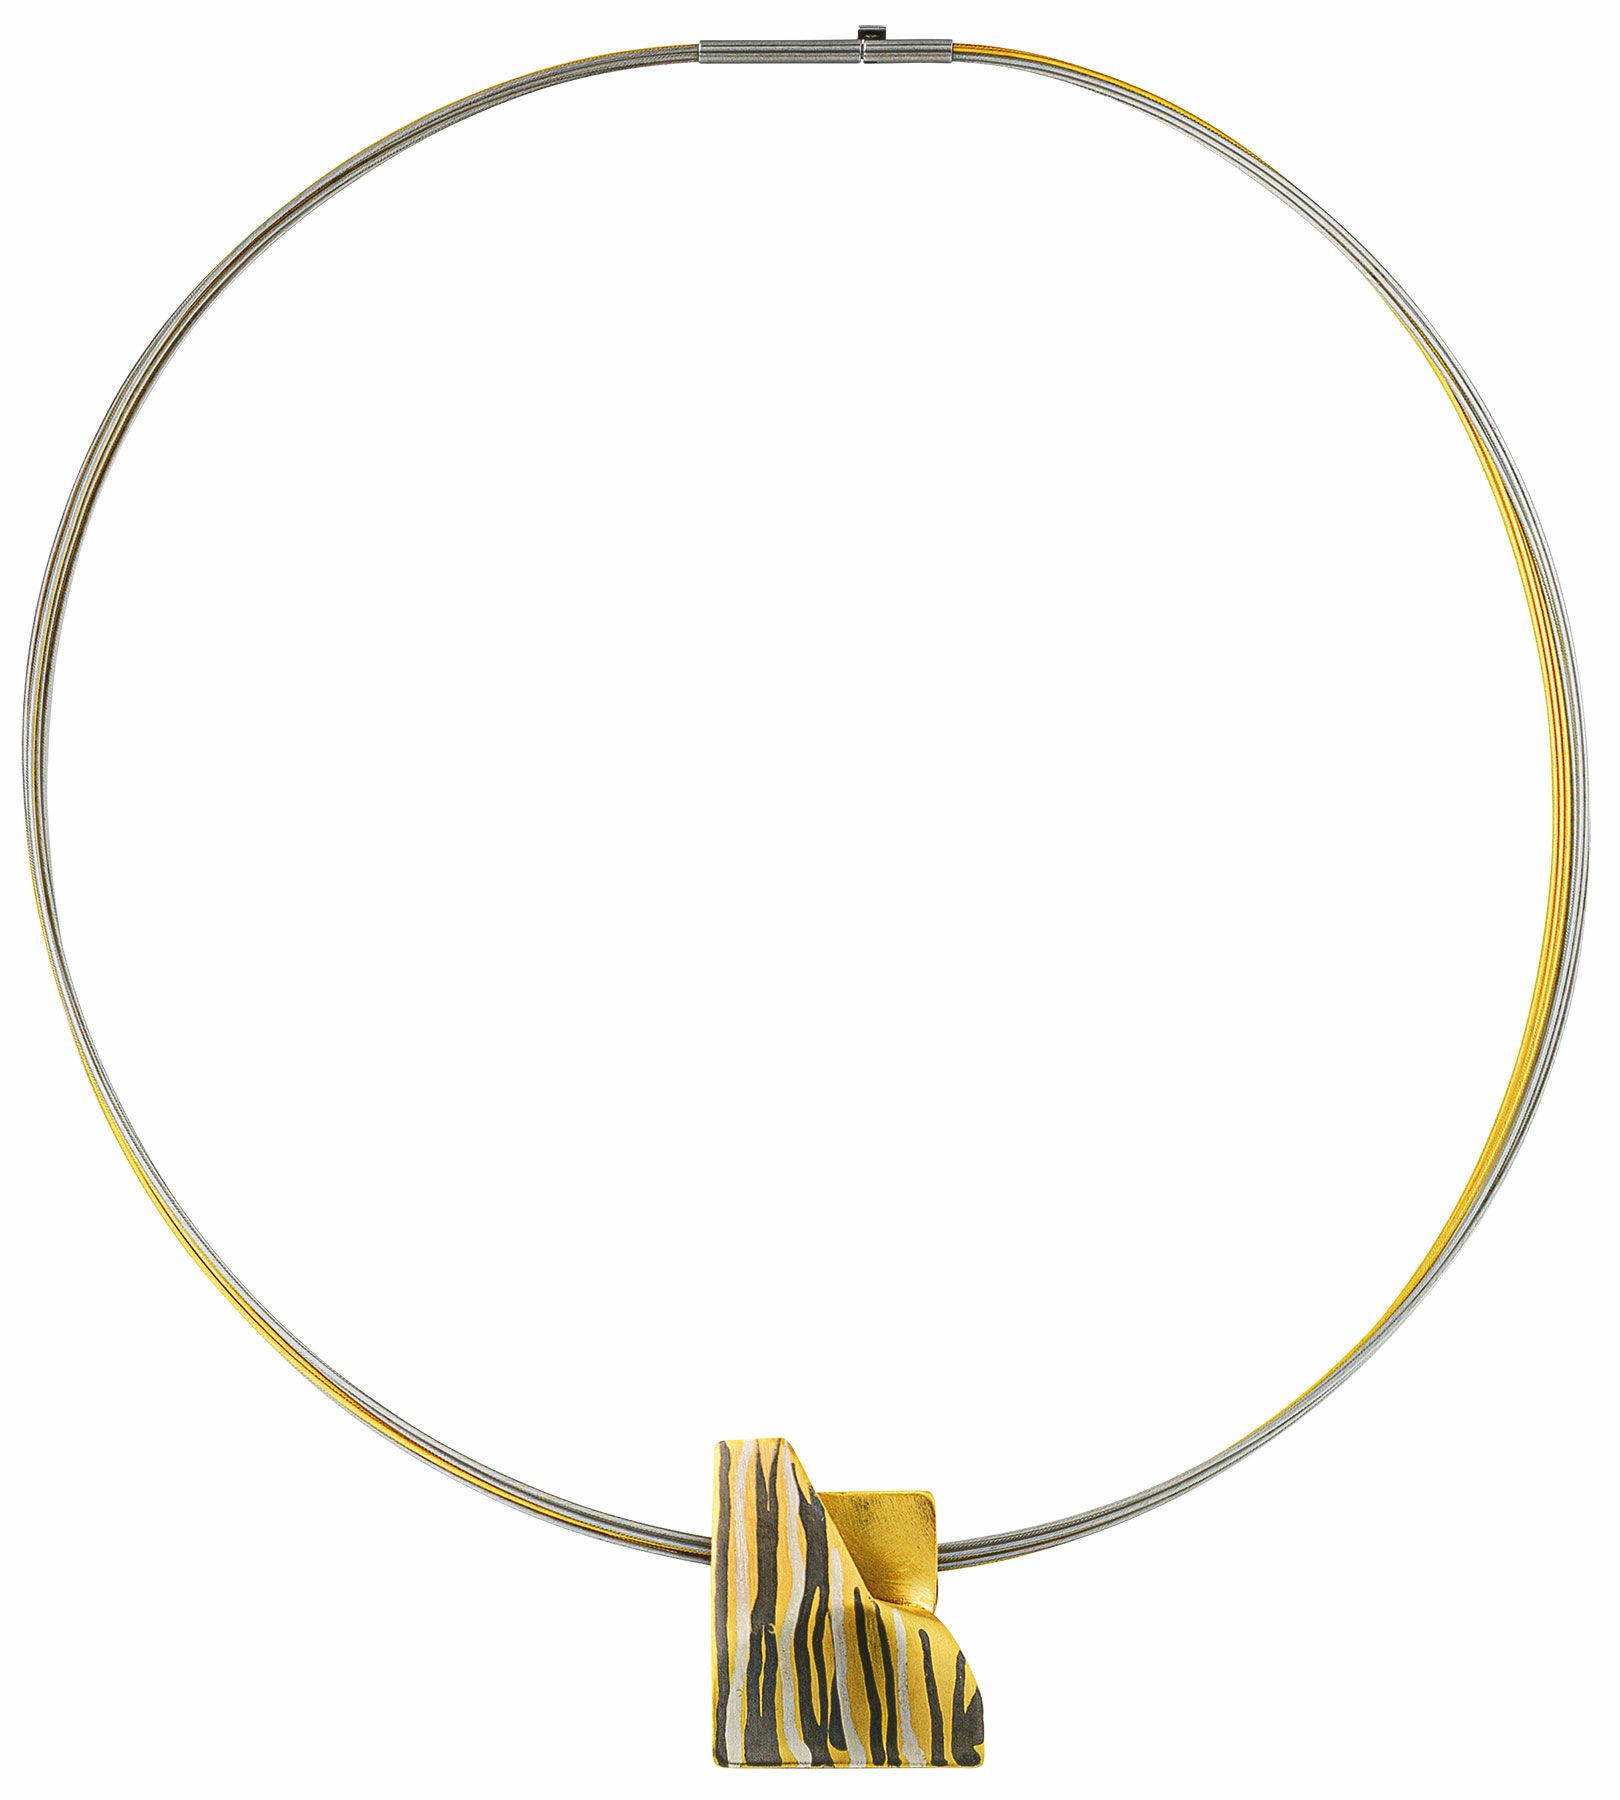 Necklace "Golden Stream" by Kreuchauff-Design